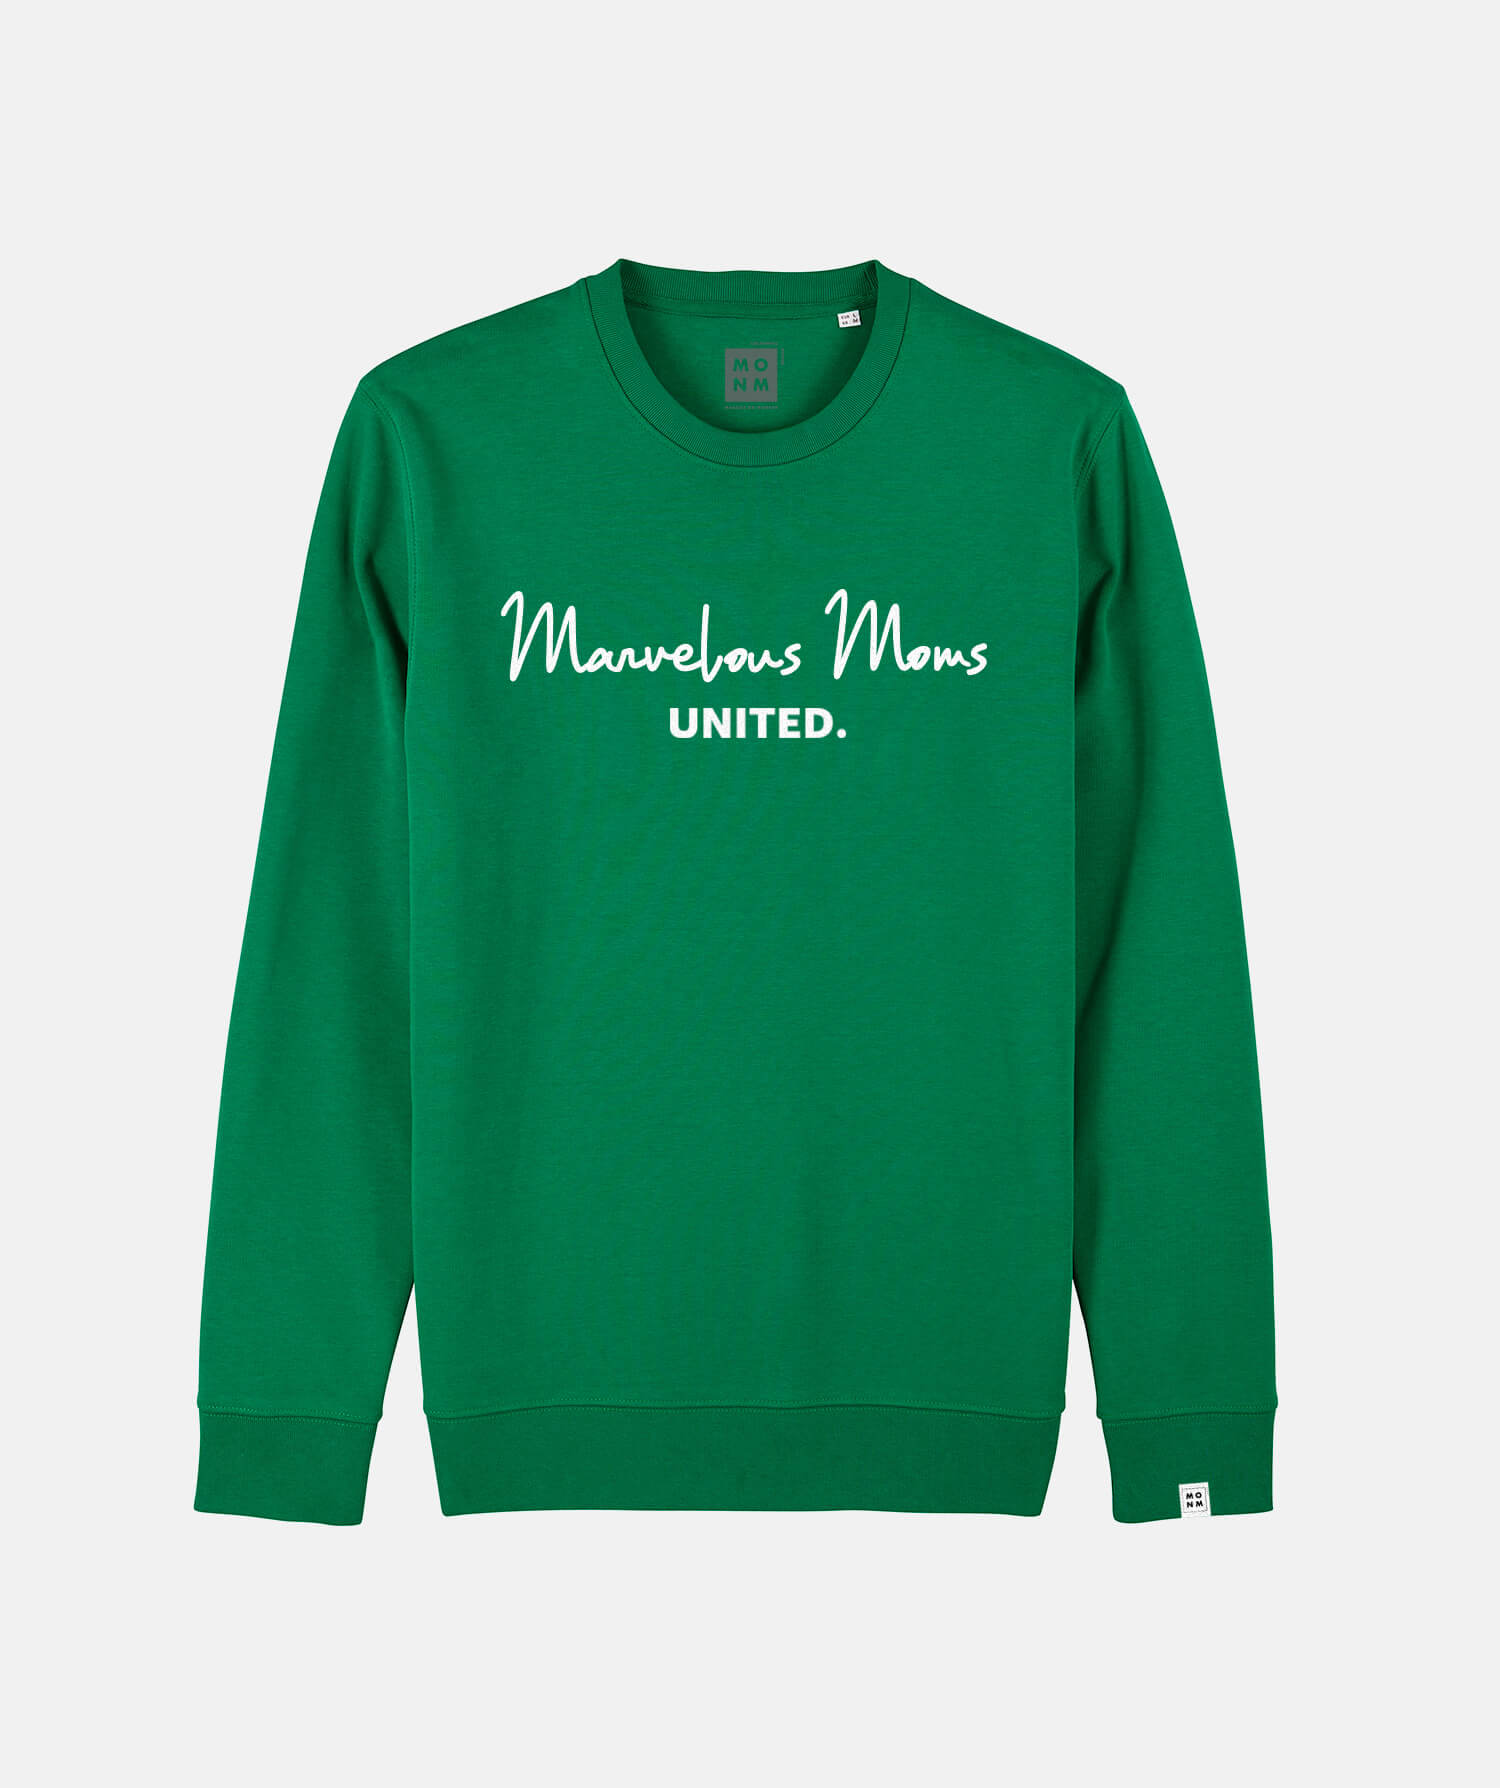 Marvelous moms united sweater voor kinderen van Mangos on Monday